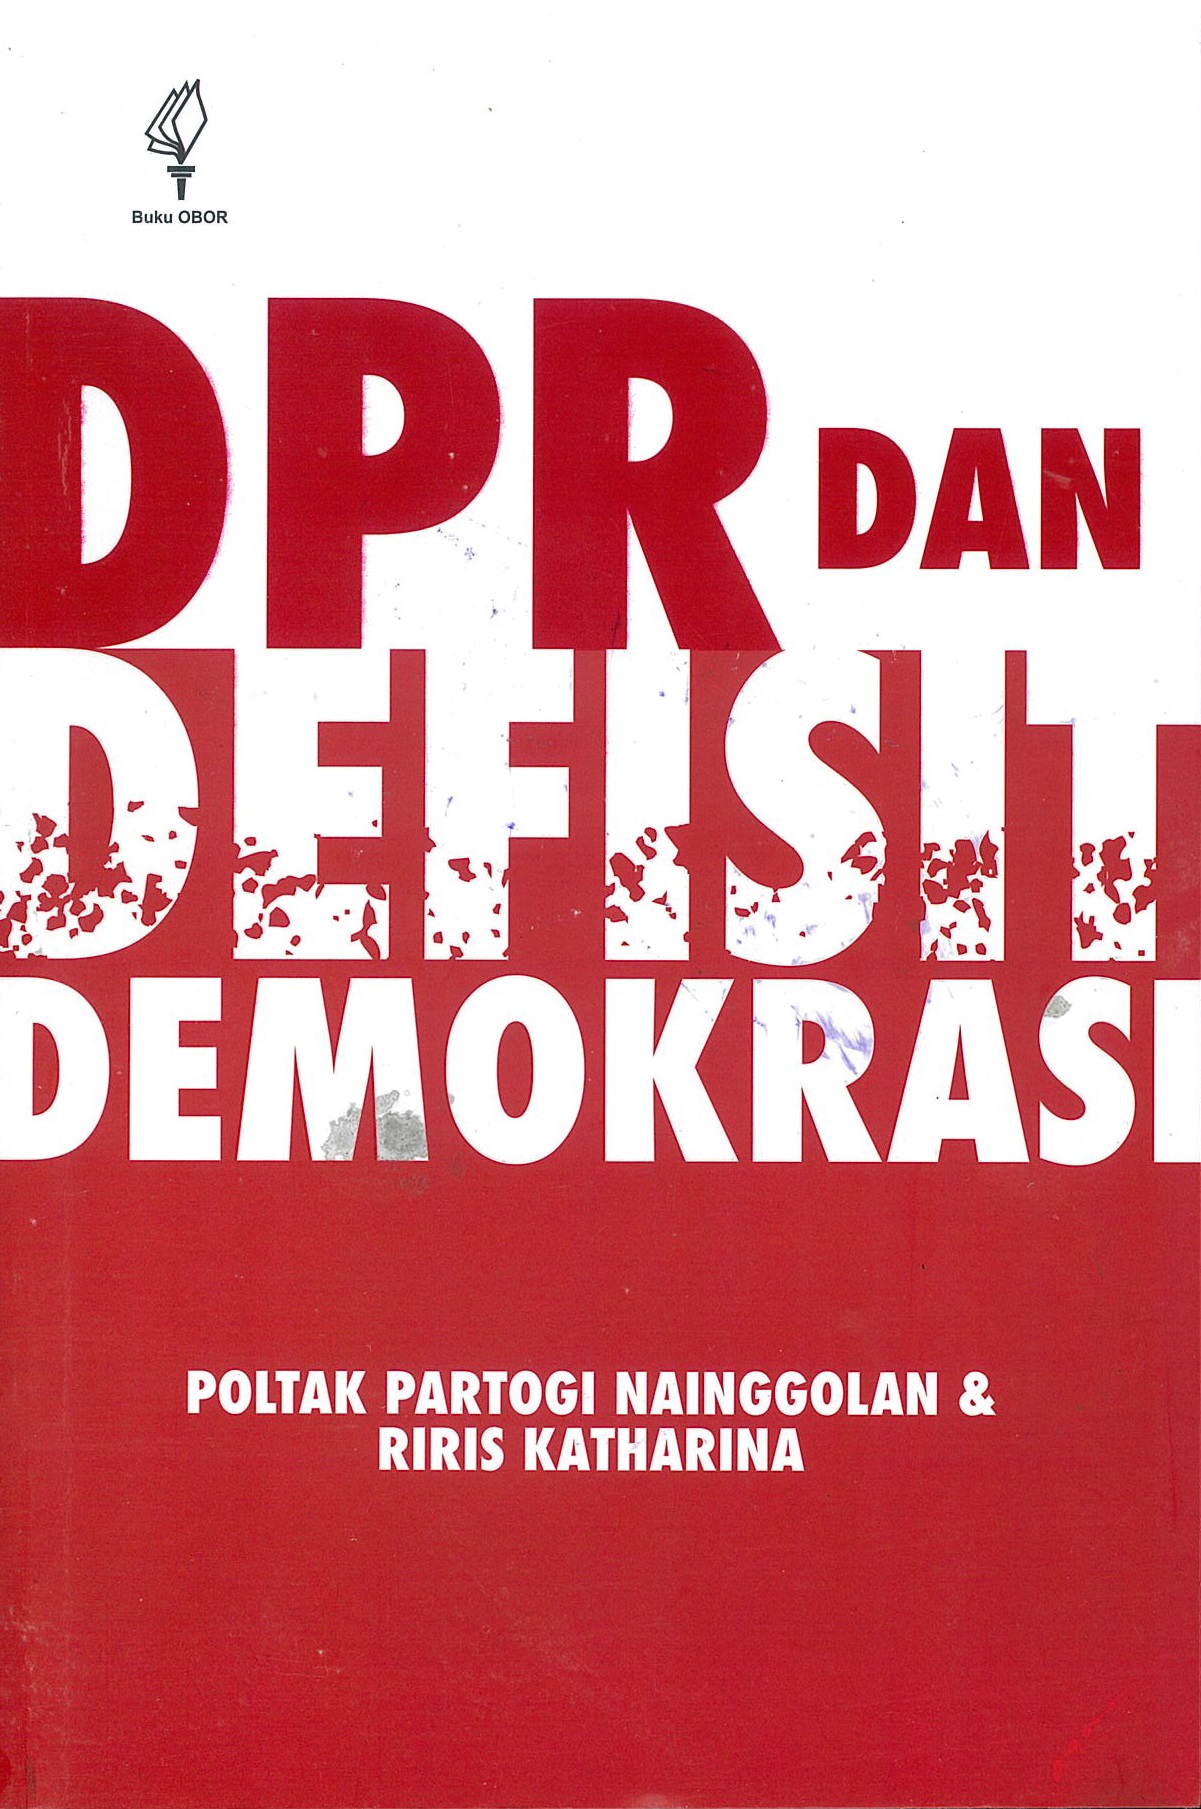 DPR dan defisit demokrasi